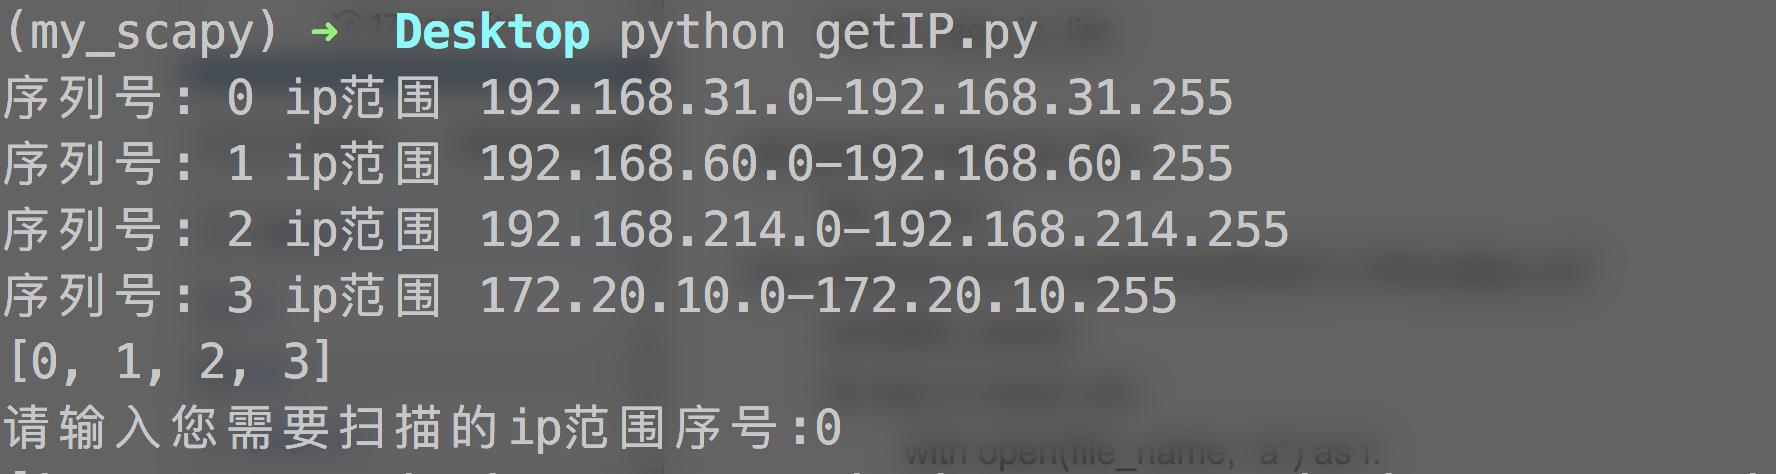 利用Python破解星巴克WiFi，获取连接过此WiFi的所有顾客信息！